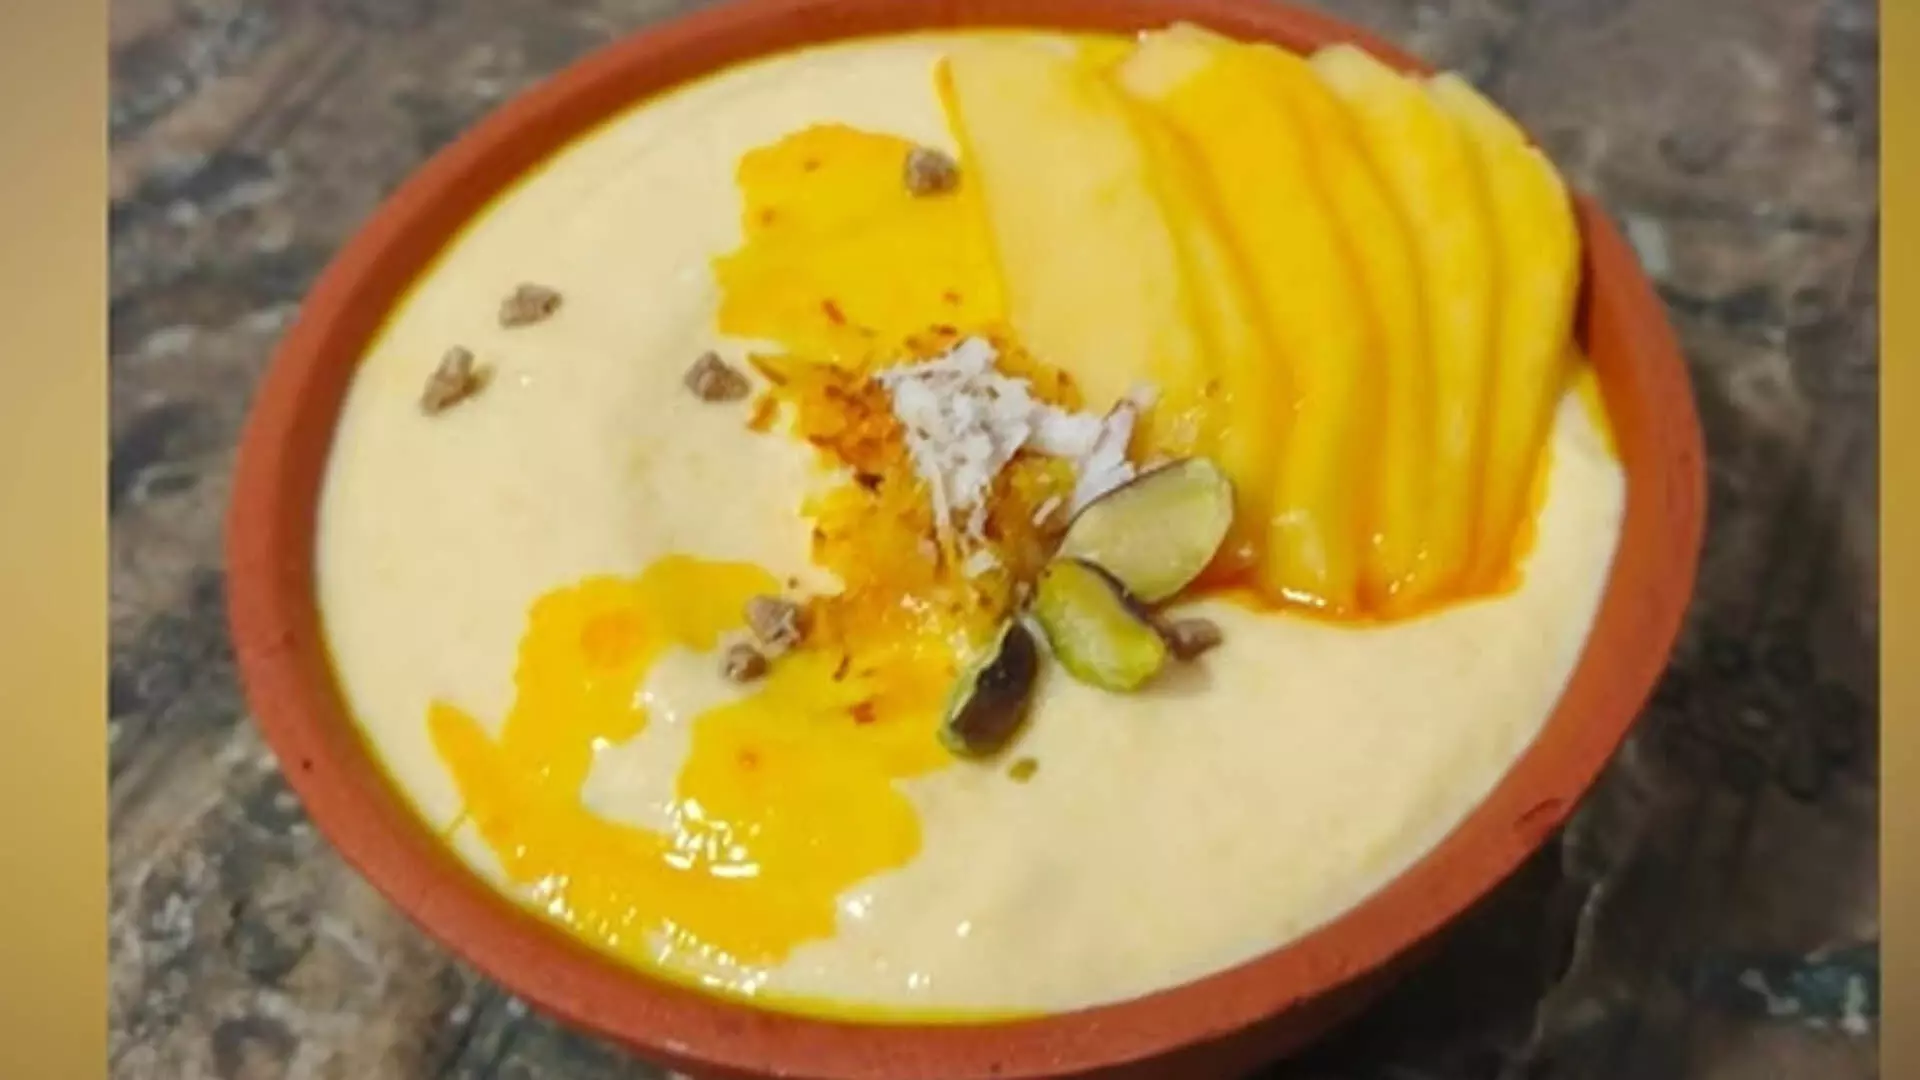 sweet cravings: अपनी मिठाई की लालसा को पूरा करने के लिए इस क्लासिक आम्रखंड रेसिपी को आज़माएँ